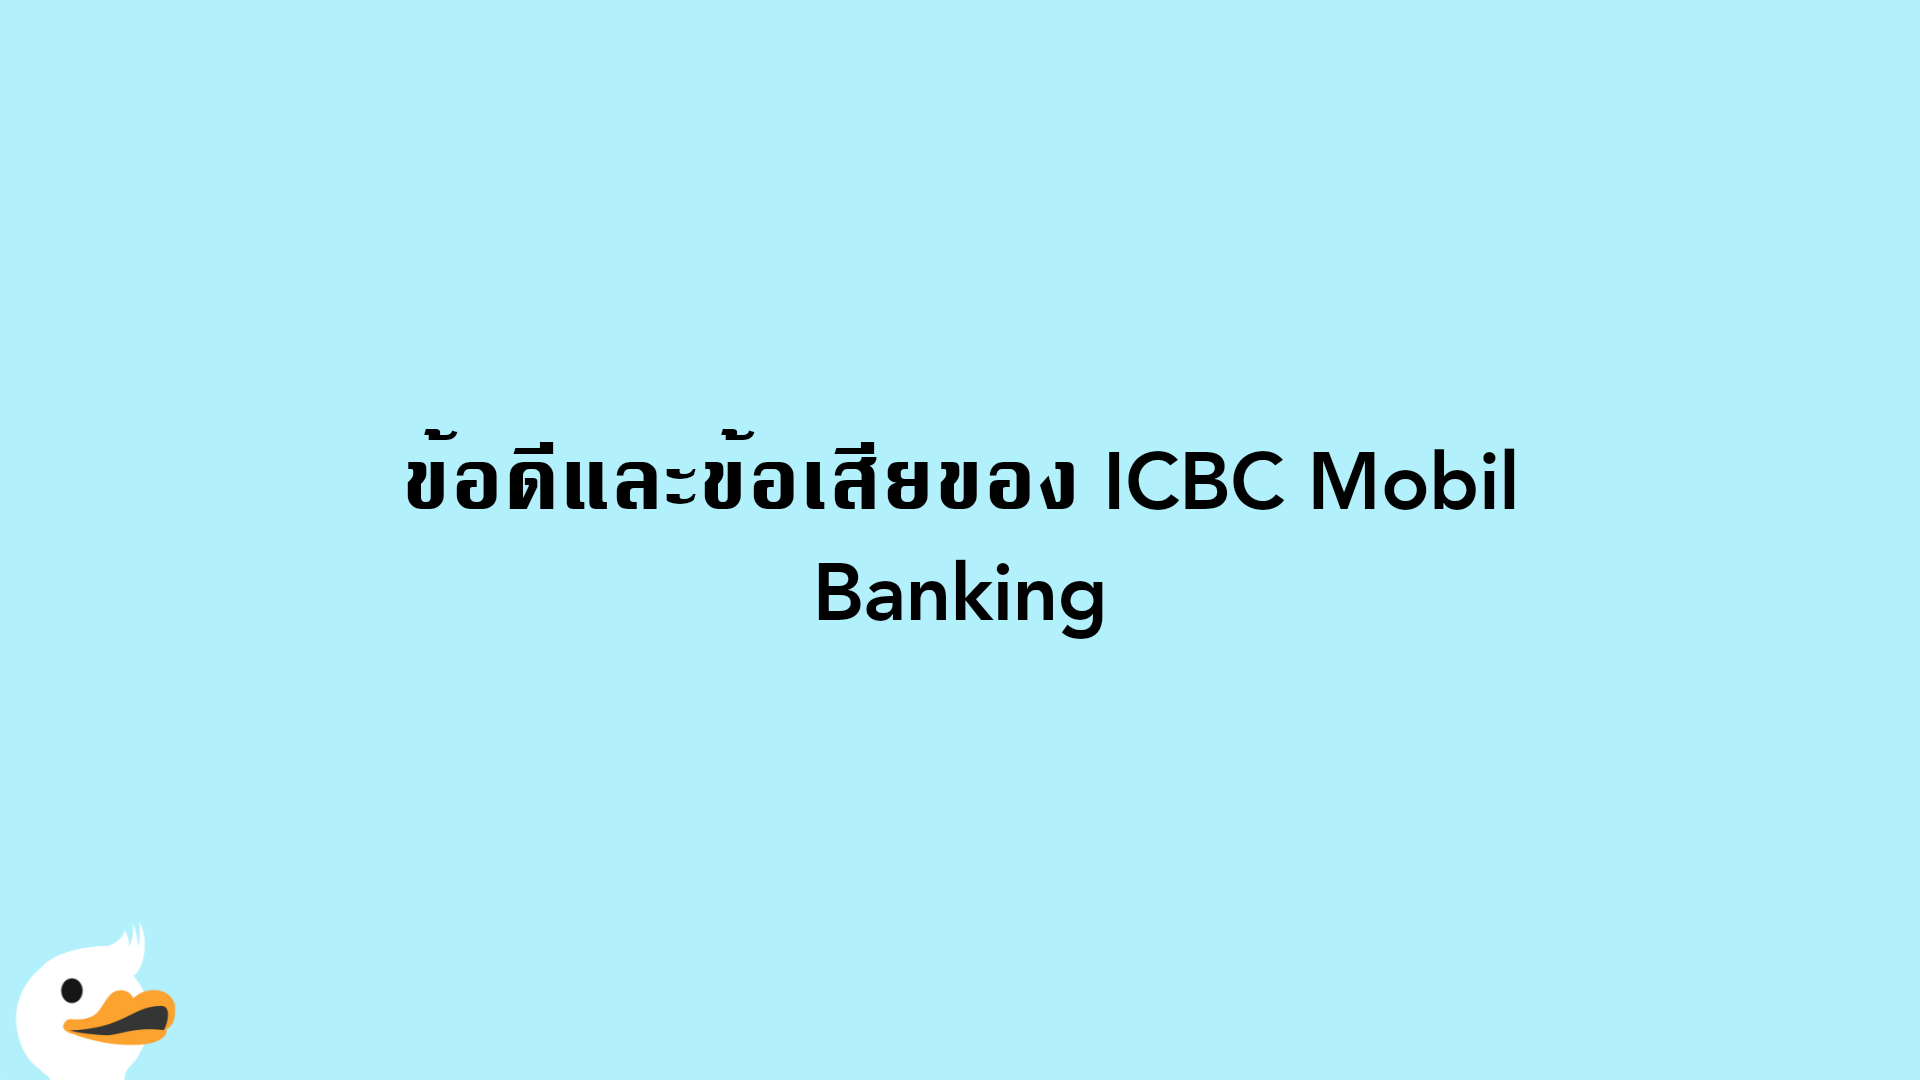 ข้อดีและข้อเสียของ ICBC Mobil Banking